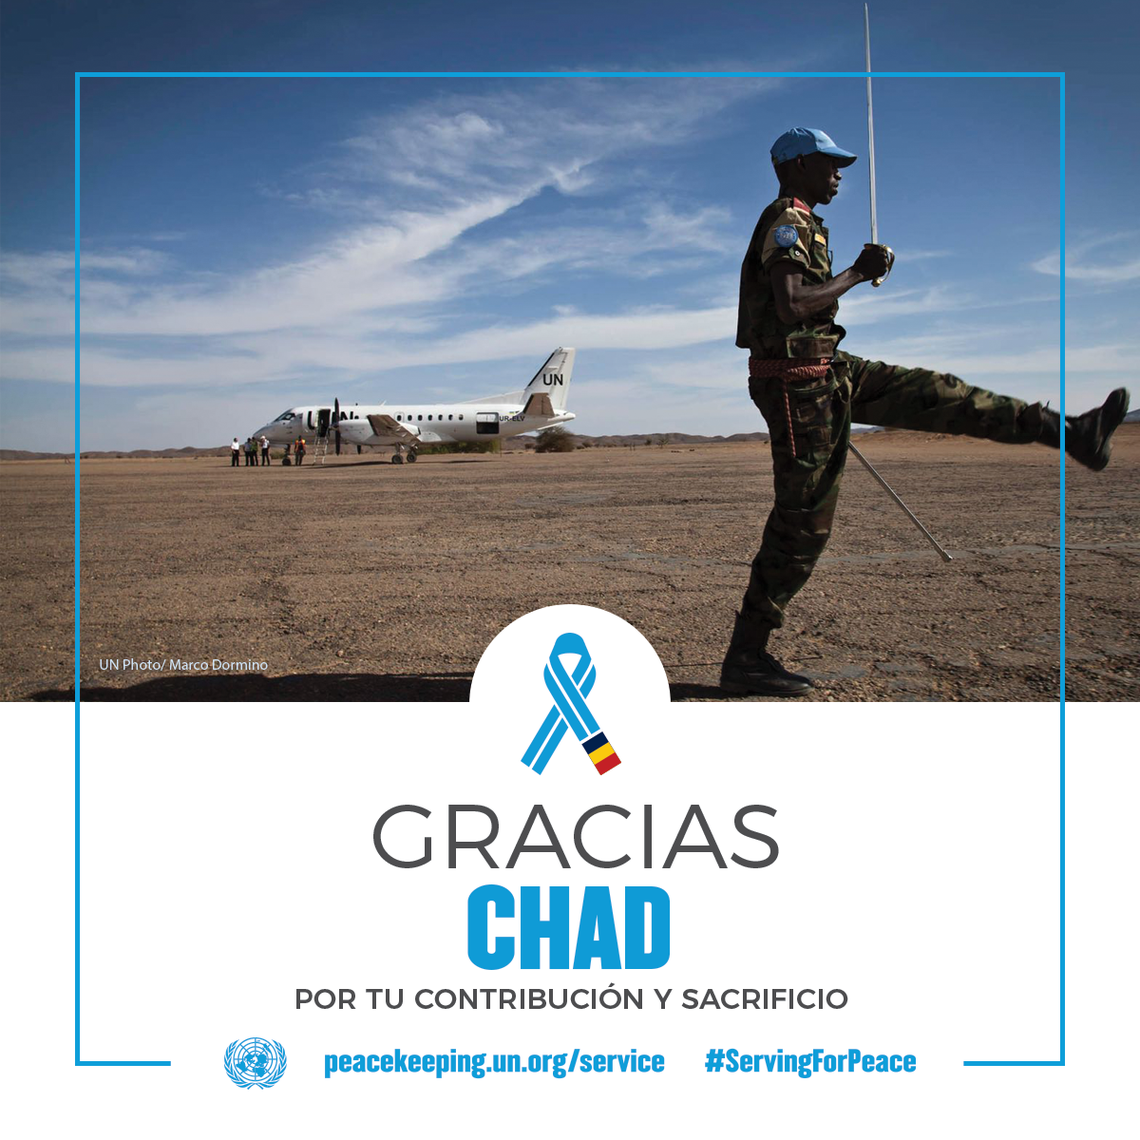 El Chad aporta 1400 militares y policías a las operaciones de mantenimiento de la paz de la ONU.